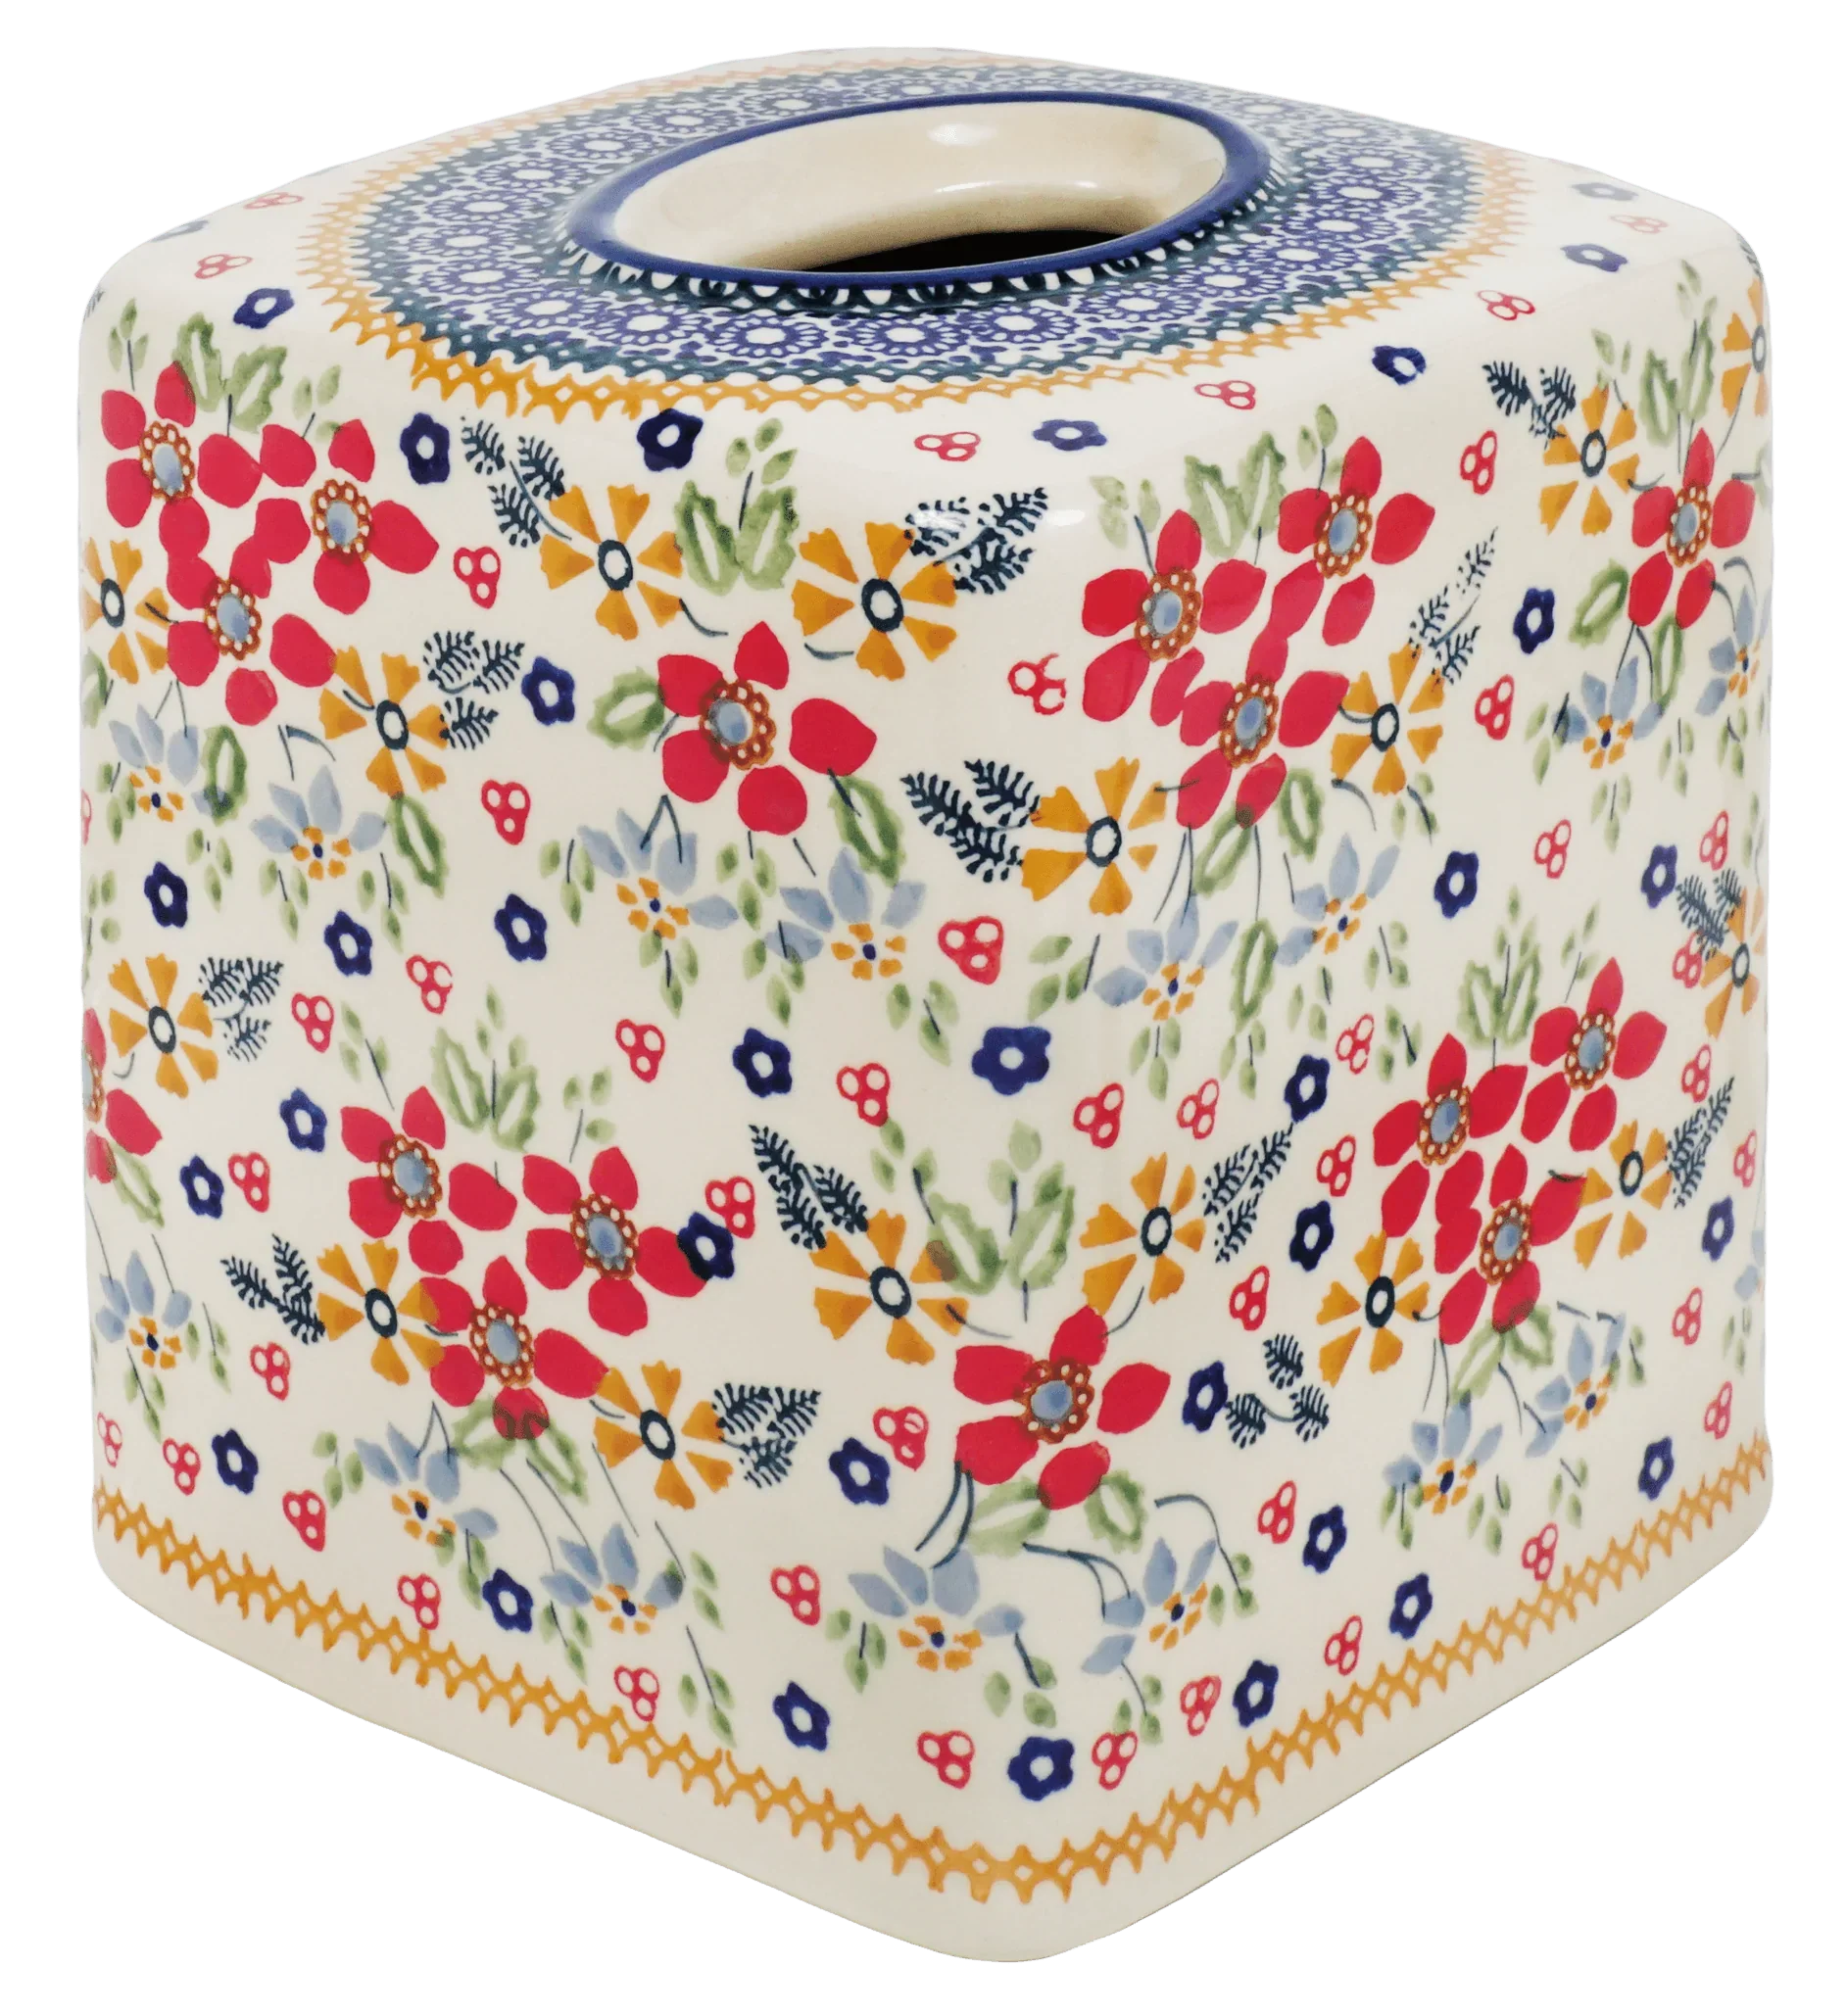 Colorful Ceramic Tissue Box Cover, 'Cobalt Flowers